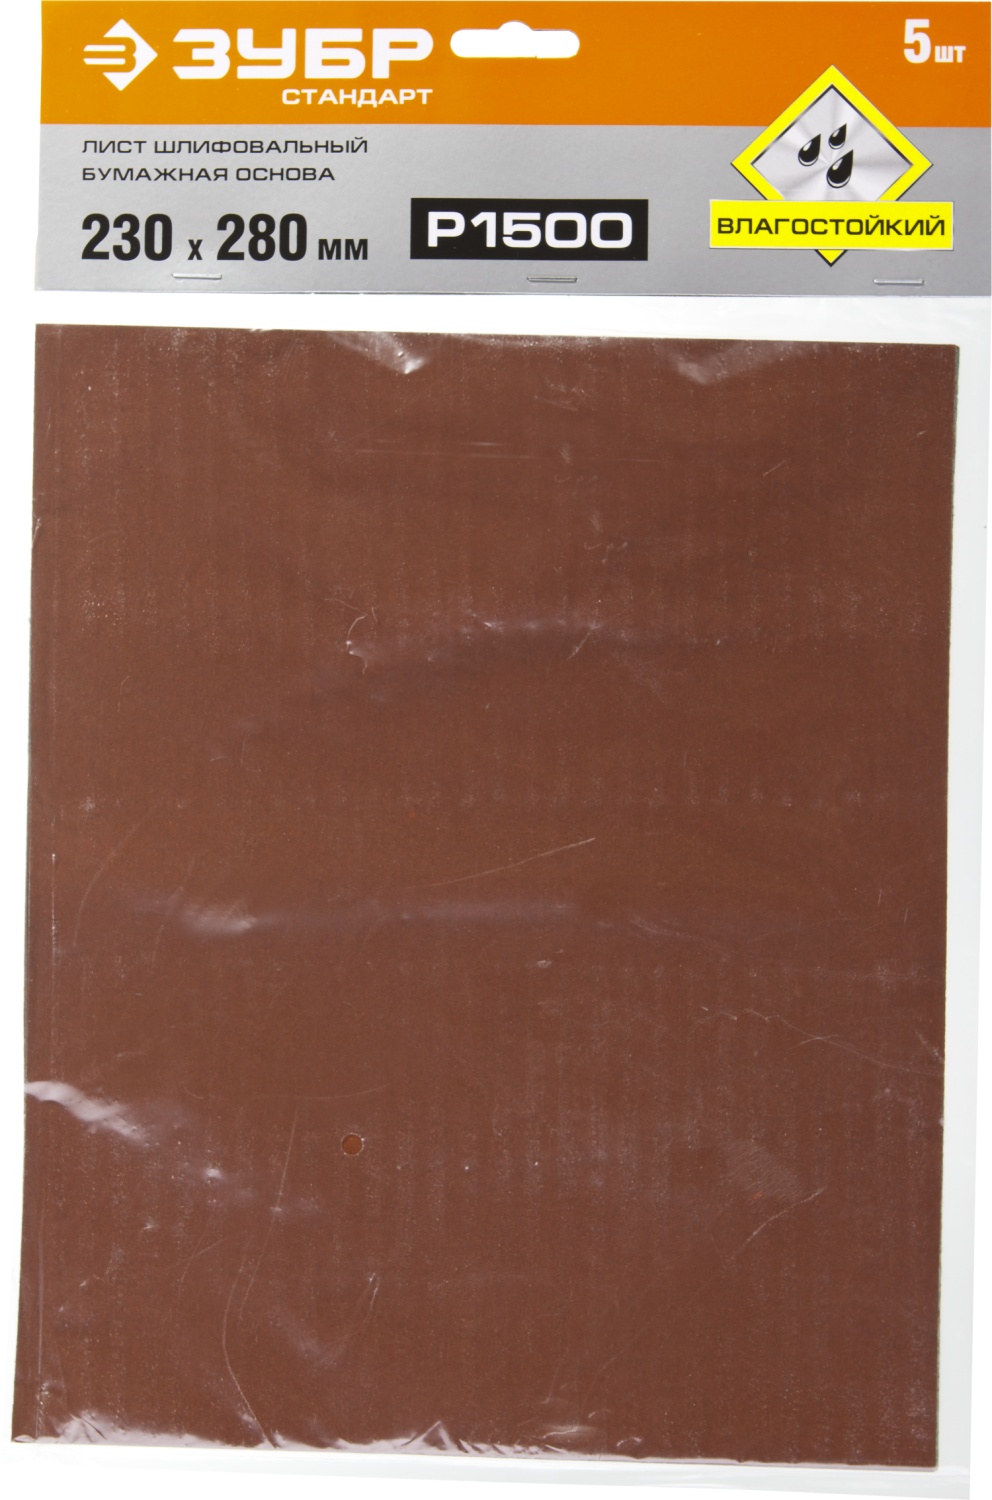 Лист шлифовальный водостойкий 230х280 мм Р-1500 ЗУБР Стандарт 35417-1500, бумажная основа, 5 шт - фото